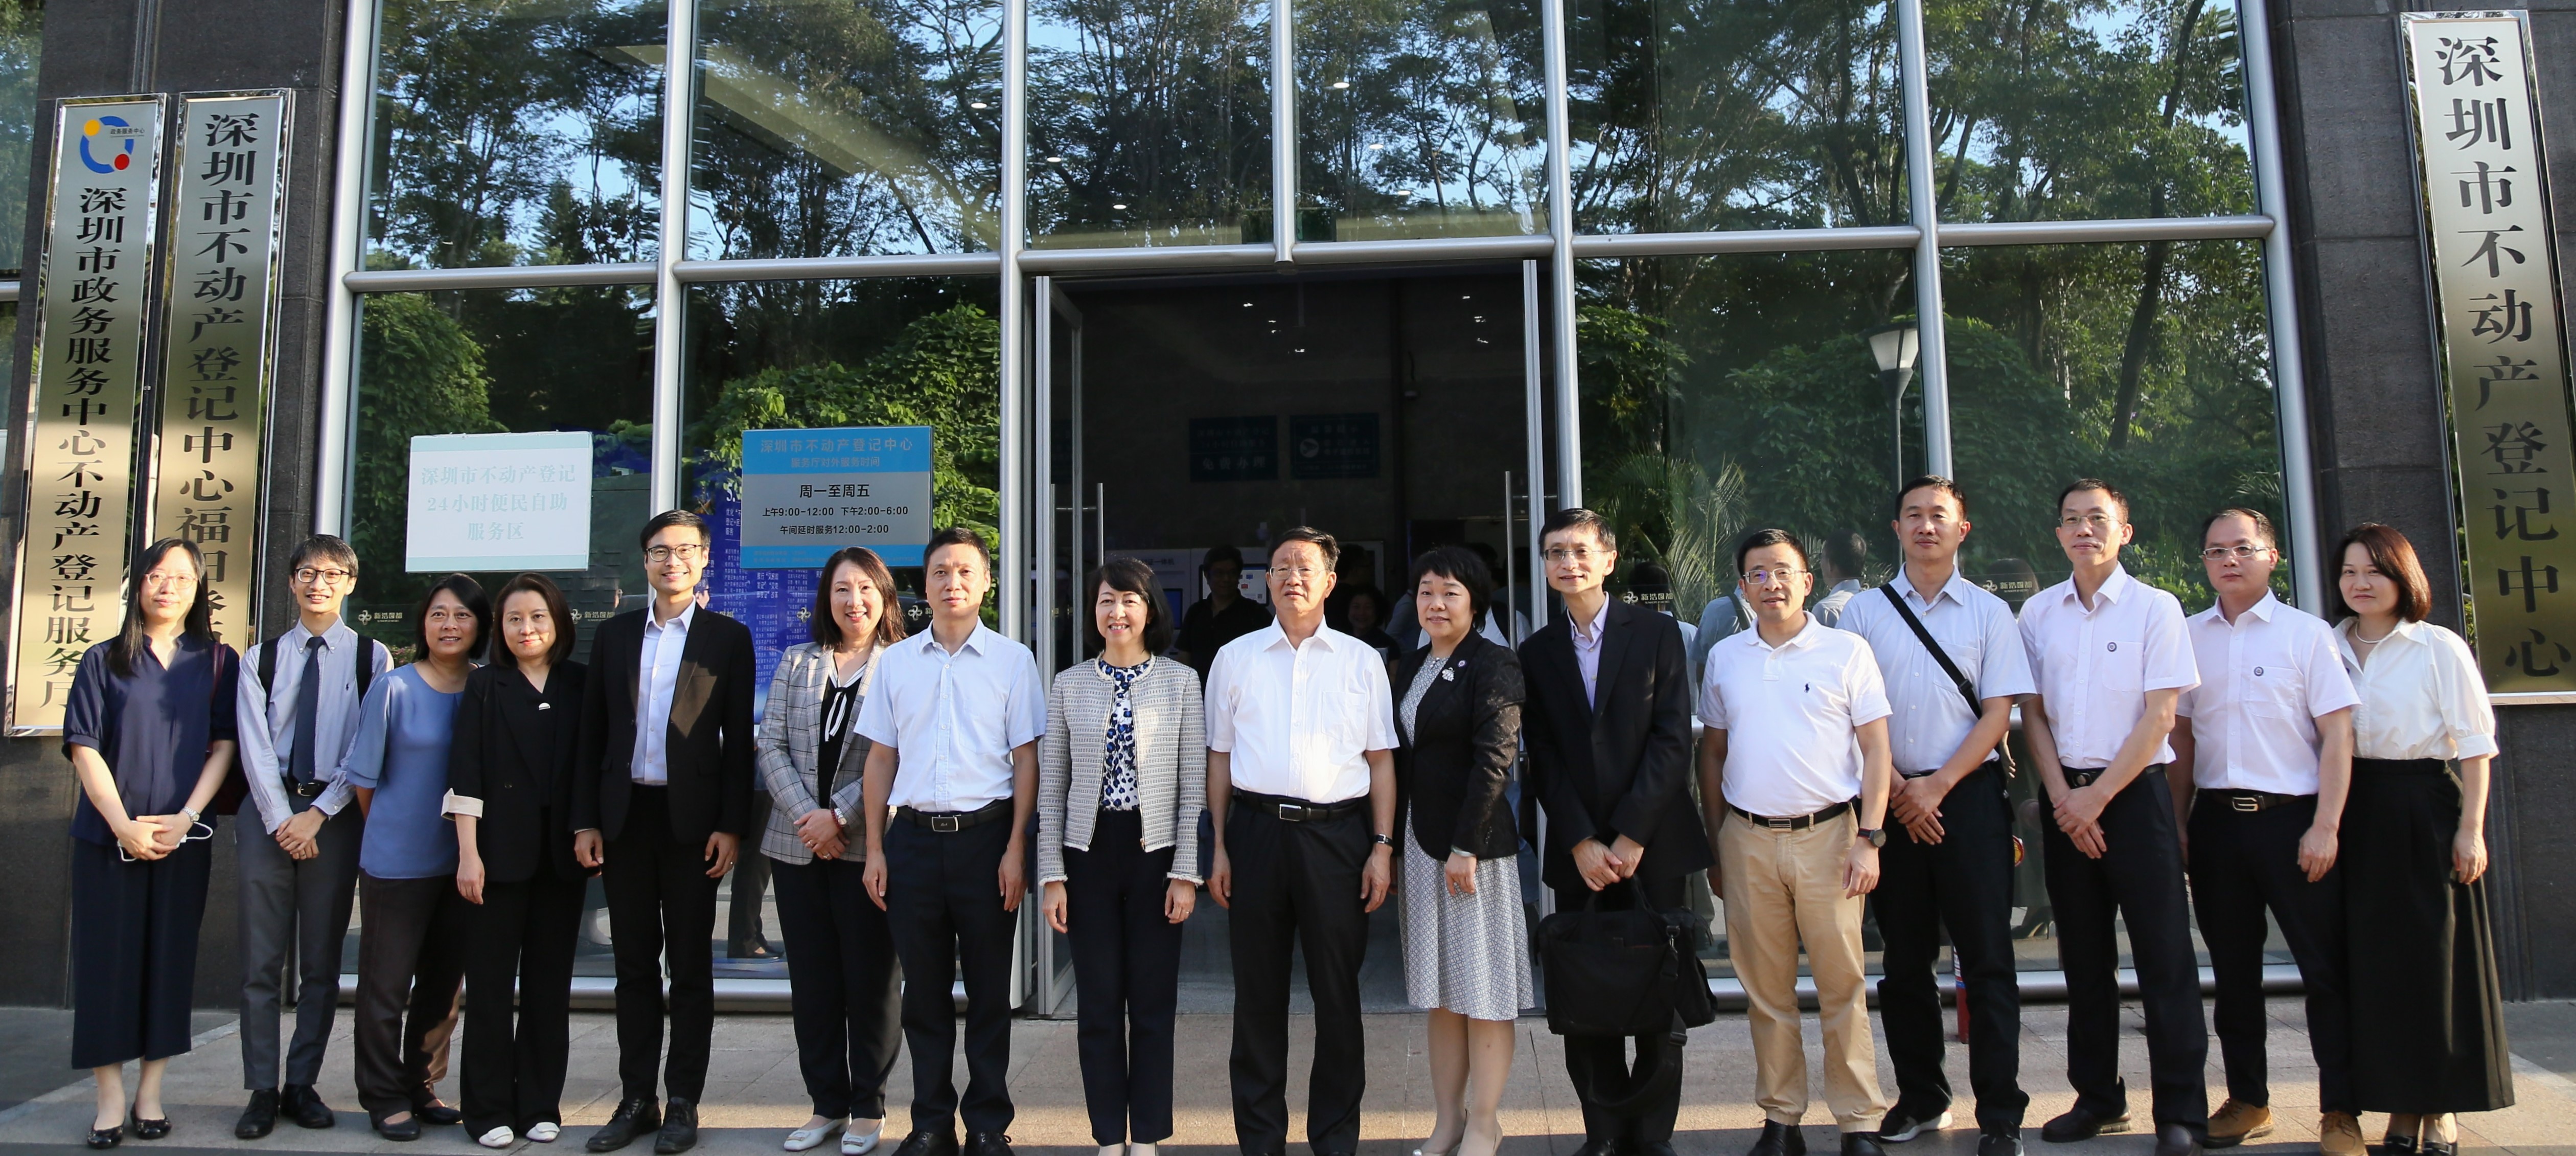 土 地 註 冊 處 處 長 譚 惠 儀 女 士 ， JP （ 左 八 ） 率 領 代 表 團 參 觀 深 圳 市 不 動 產 登 記 中 心